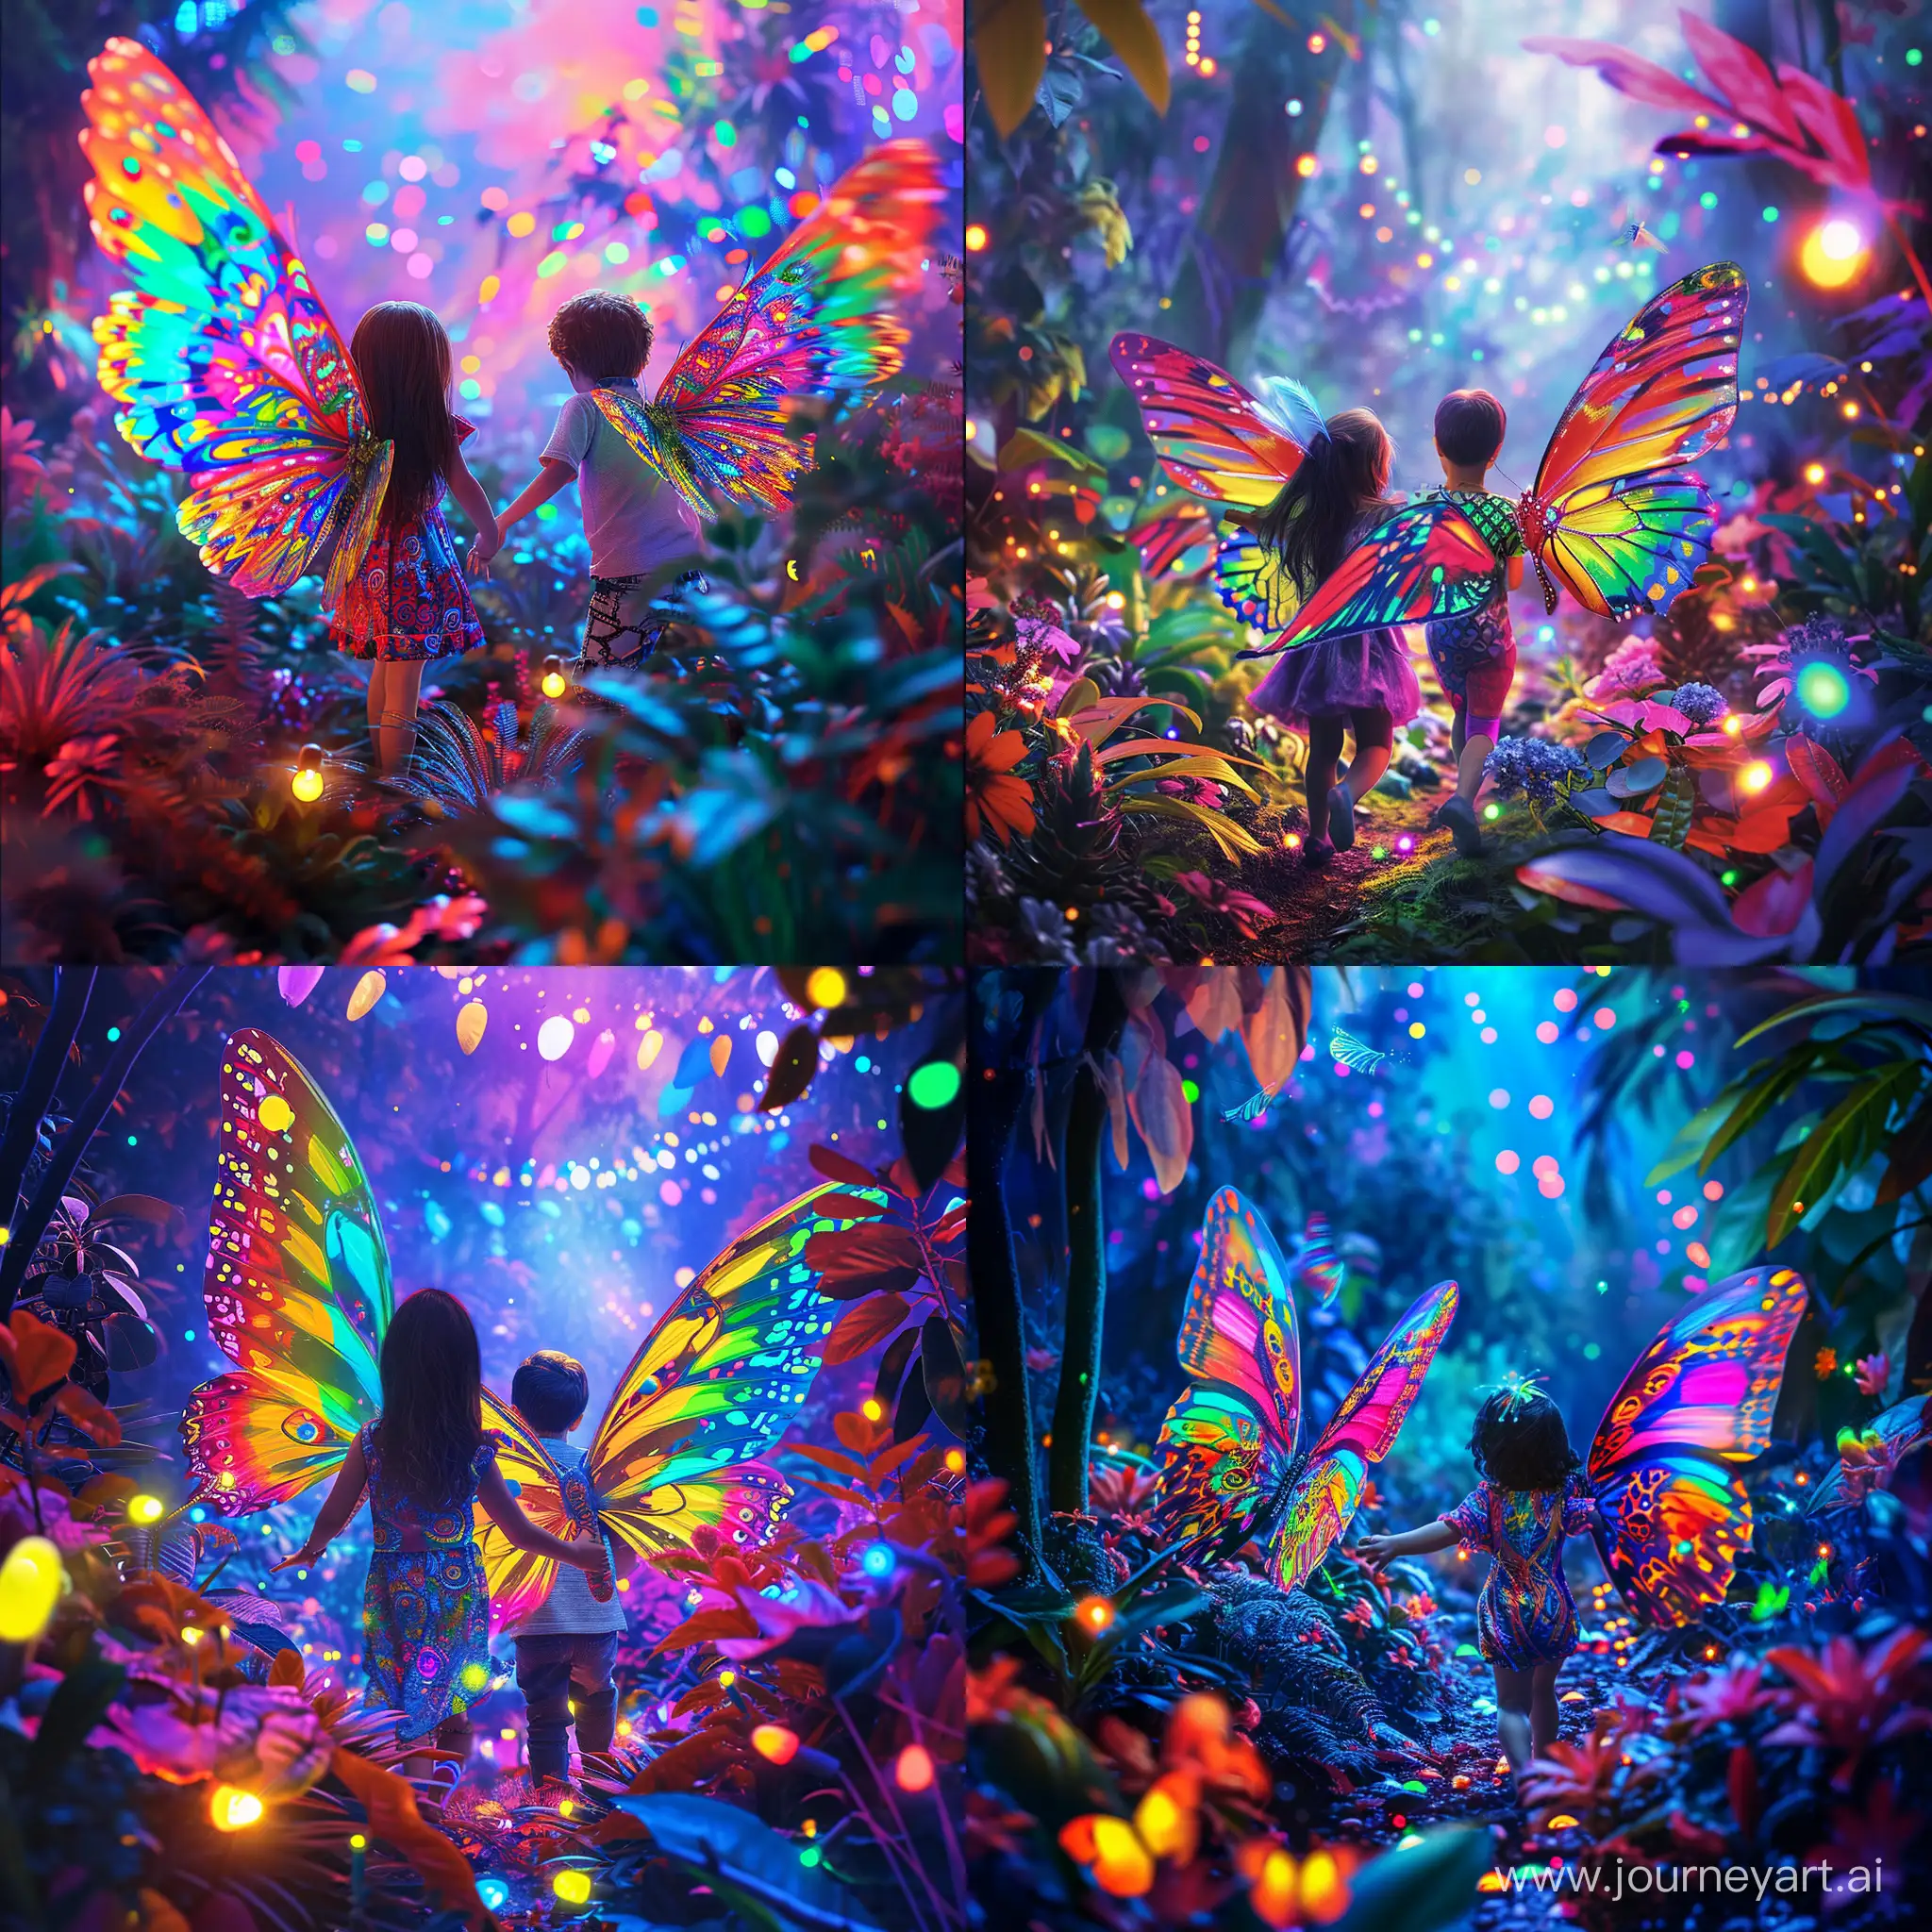 Девочка и мальчик с яркими узорчатыми радужными крыльями как у бабочек, порхают по сказочному лесу среди разноцветных огоньков и цветущих растений разнообразной окраски, фотография, гиперреализм, высокое разрешение